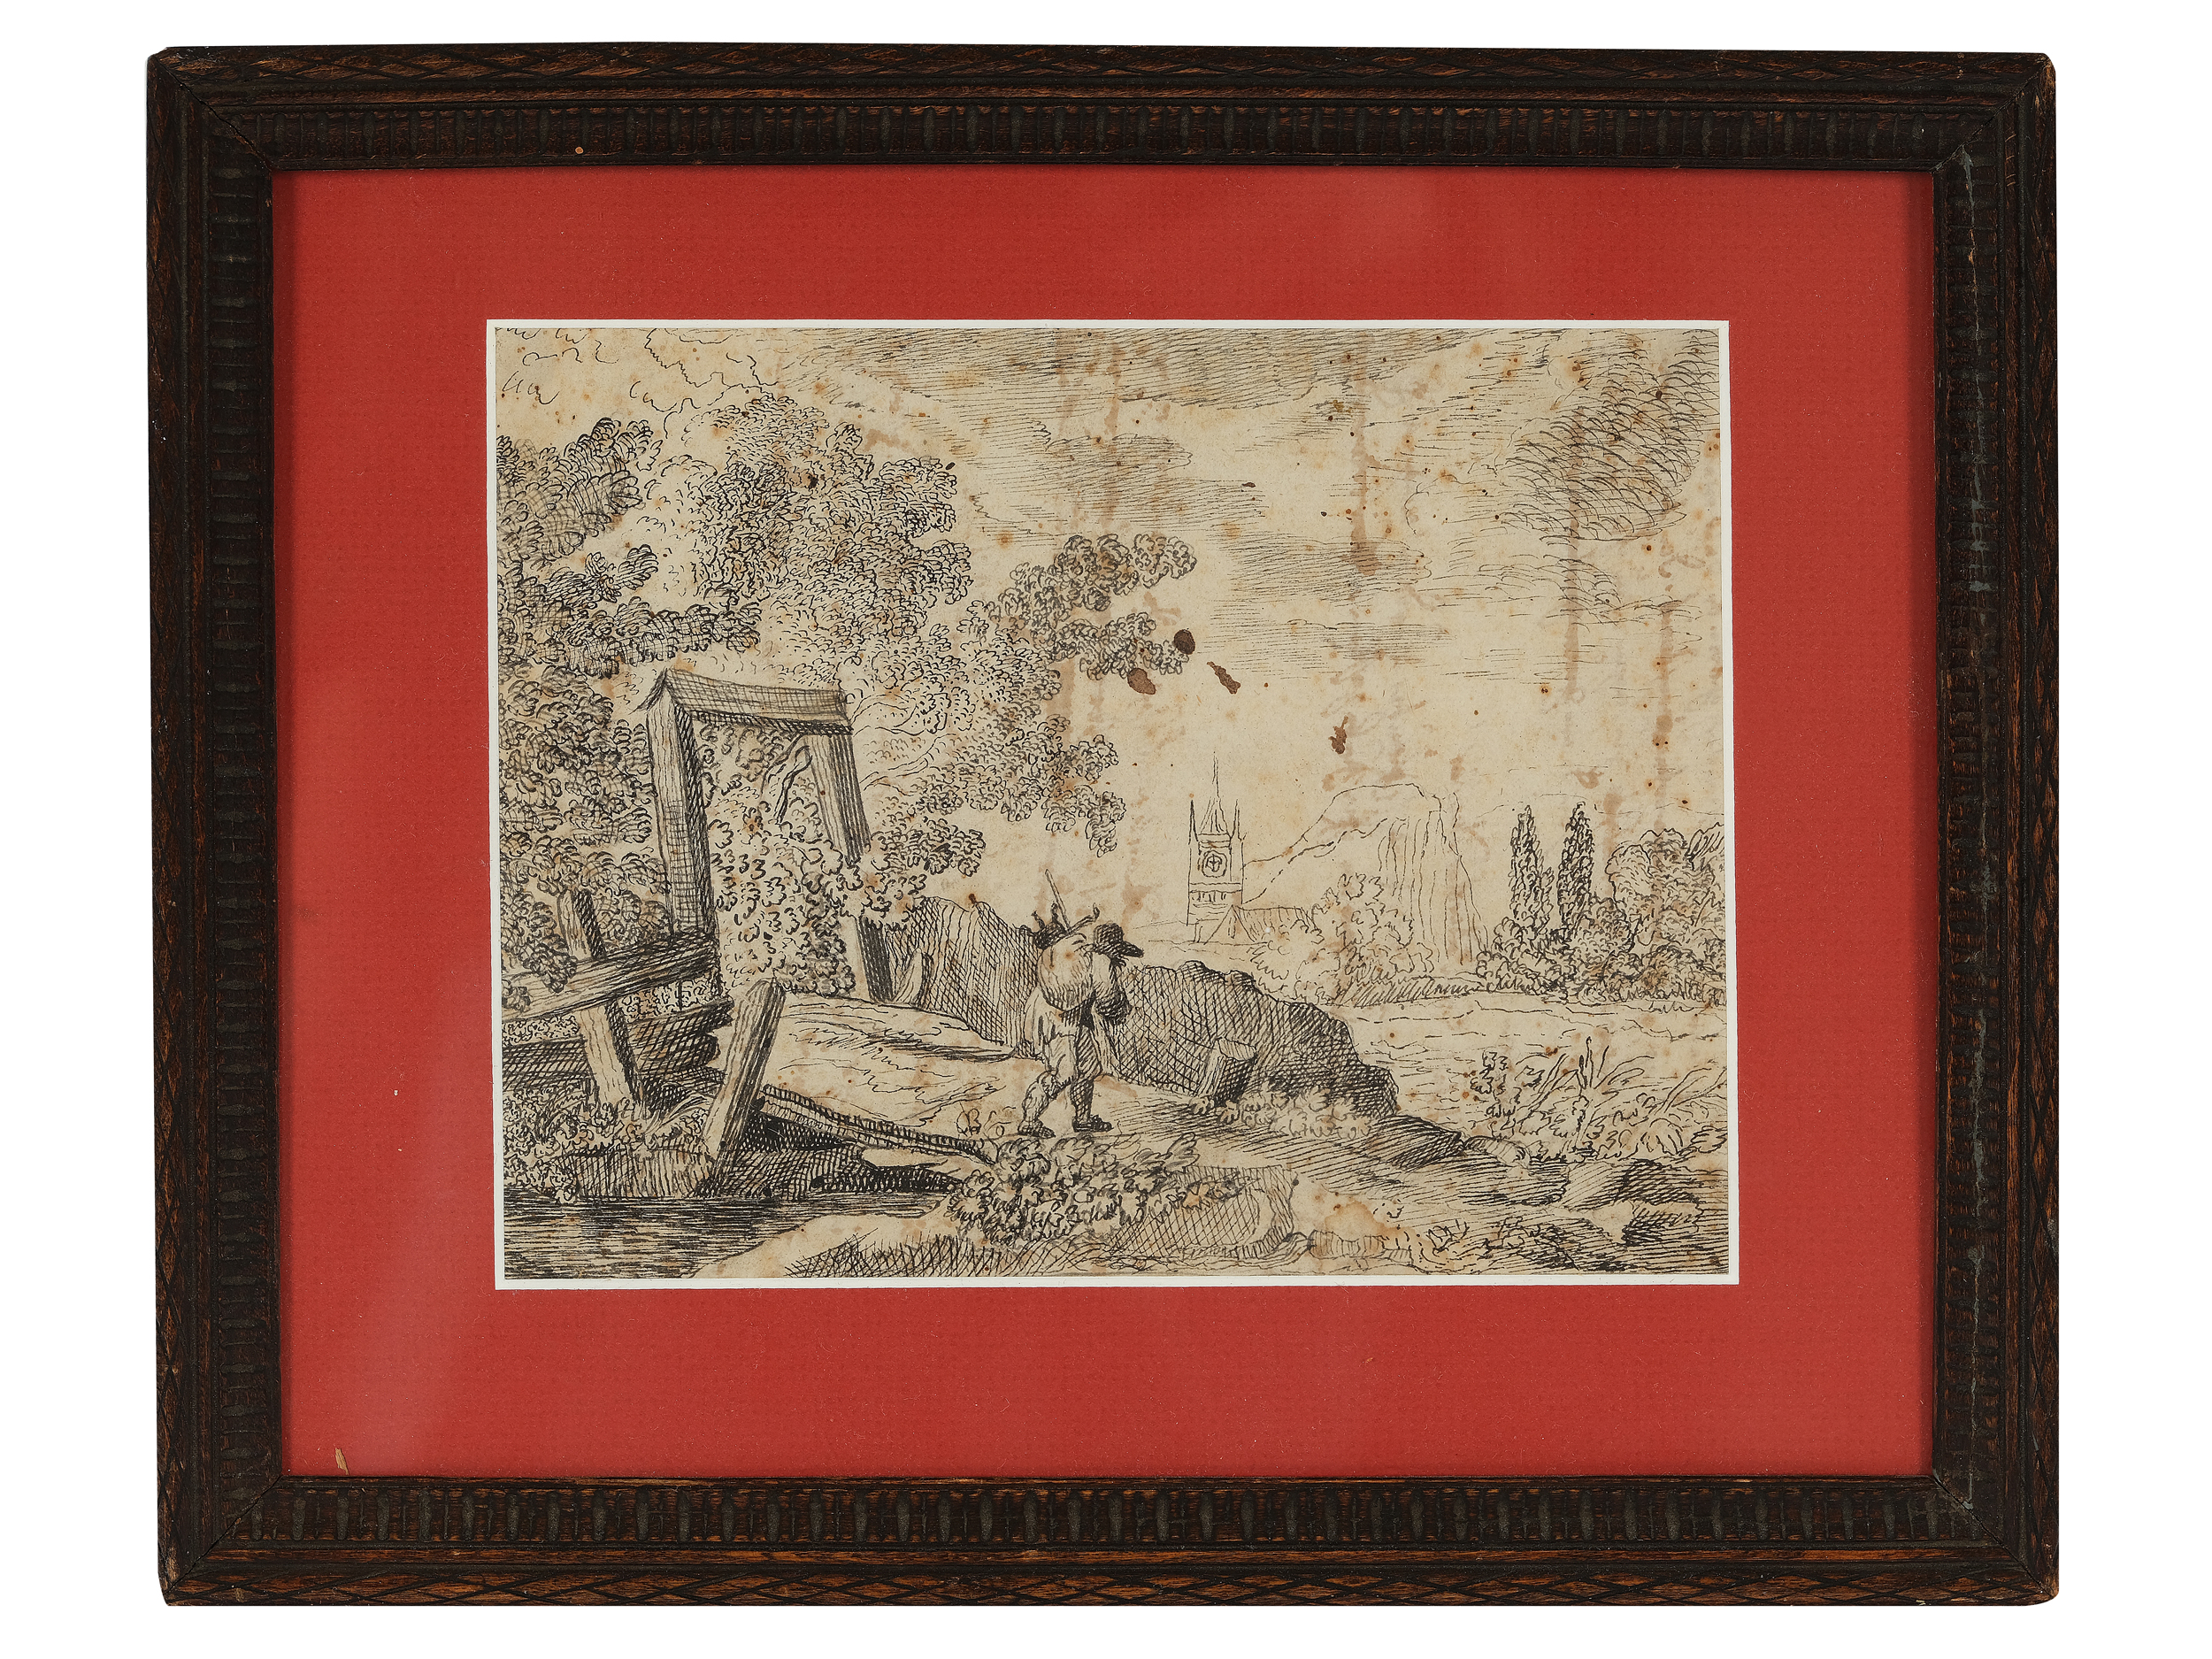 Flemish Master, Landscape, Beginning of 17th century - Image 2 of 3